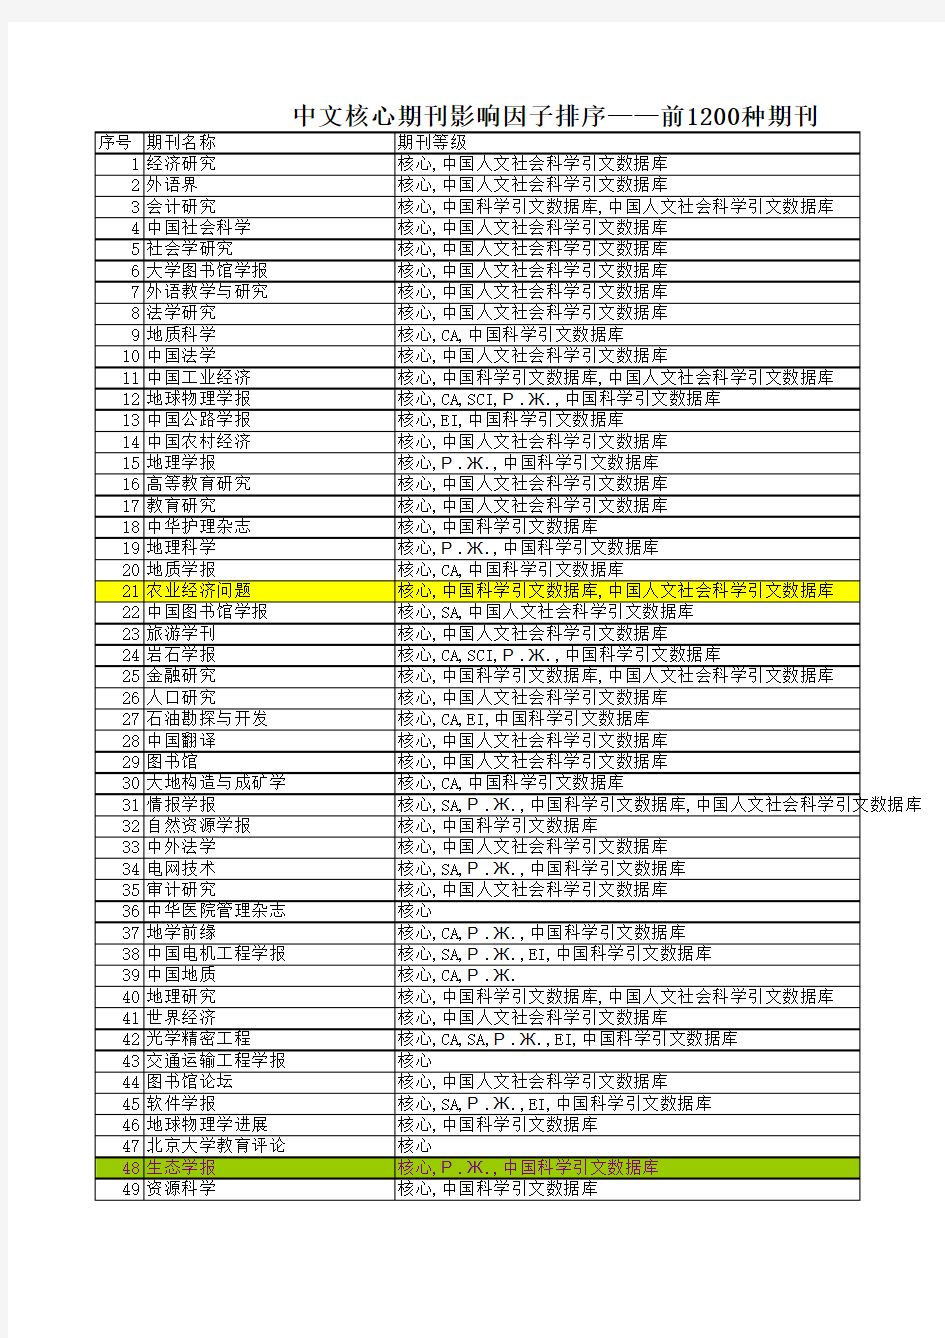 中文核心期刊影响因子排序——前1200种 JCR2010